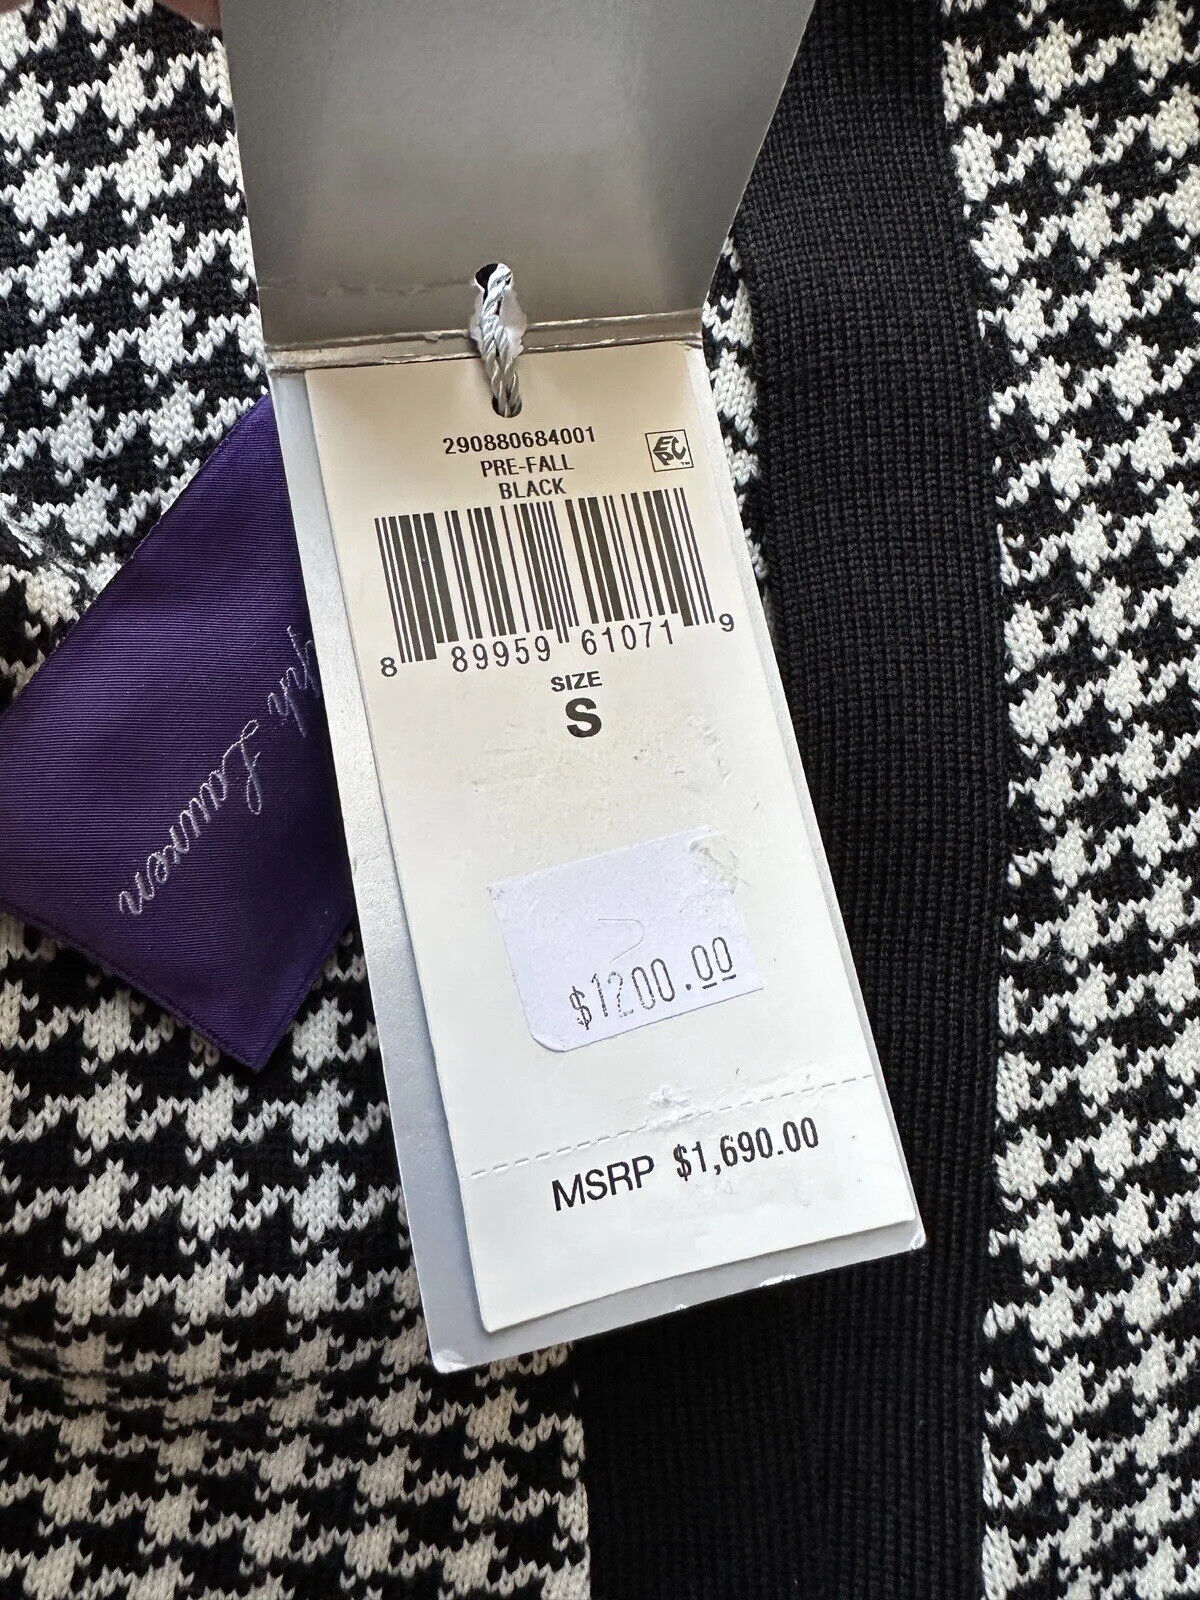 Neu mit Etikett: 1.690 $ Ralph Lauren Purple Label Hahnentritt-Wollstrickjacke in Schwarz, Größe S, Italien 